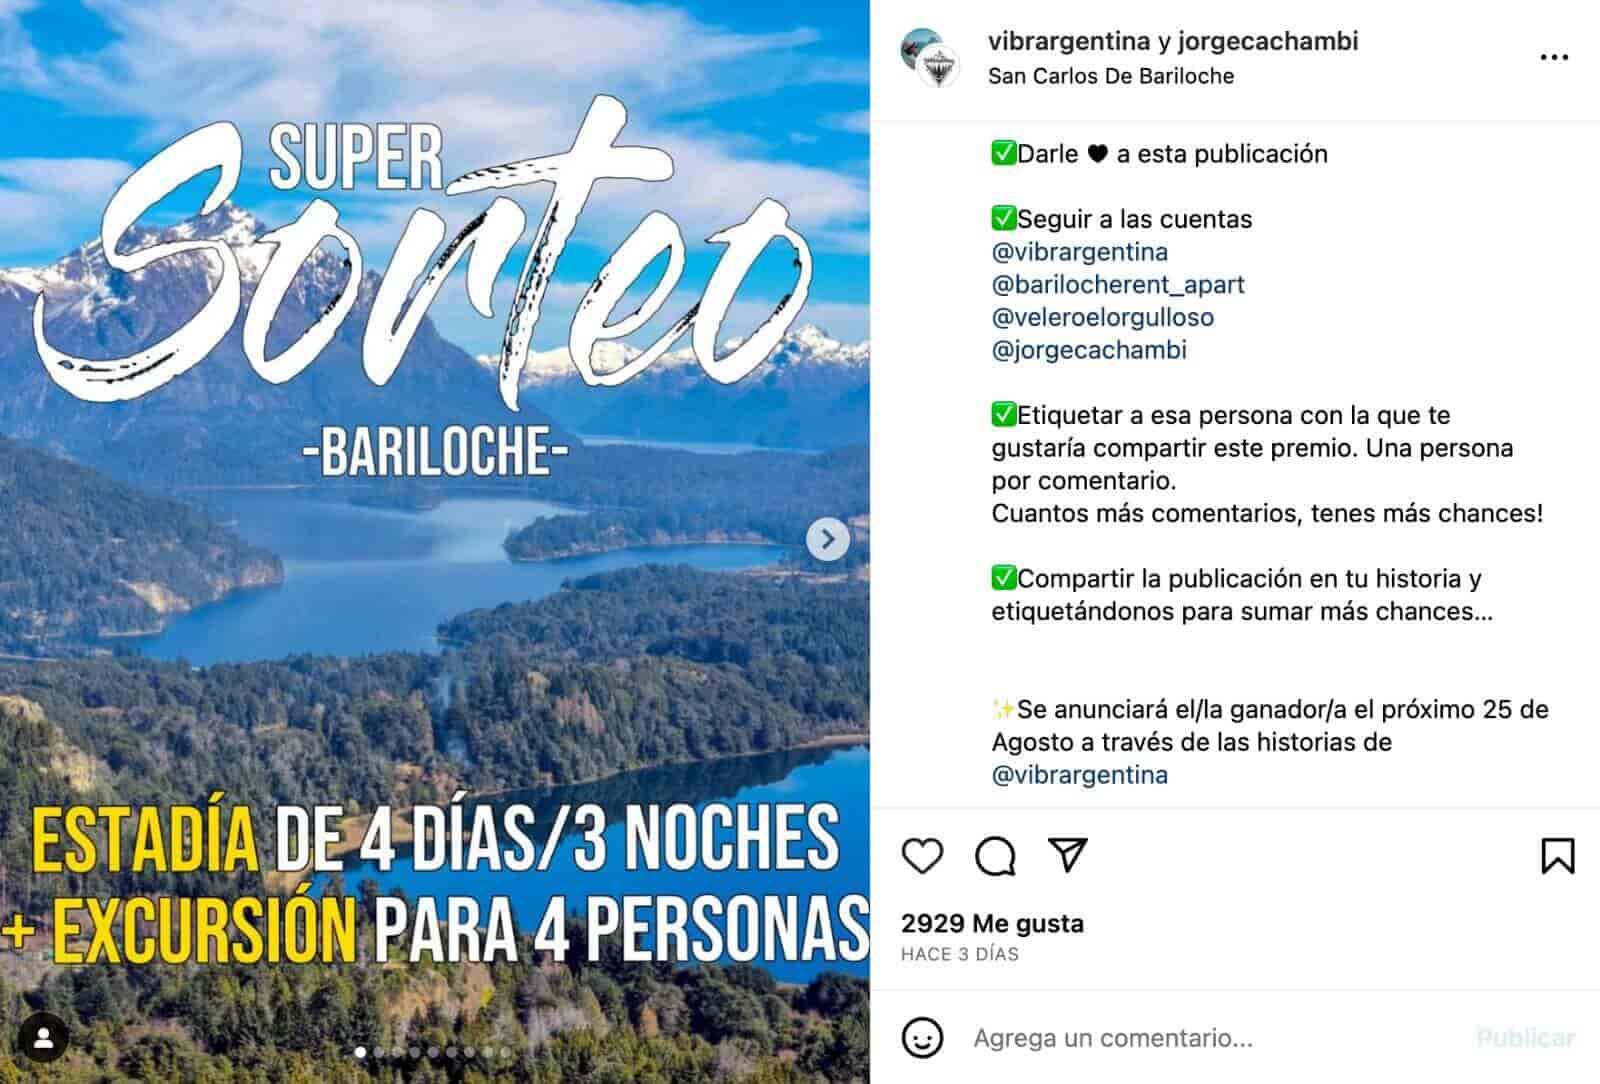 Ejemplo de concurso en Instagram: Vibrargentina